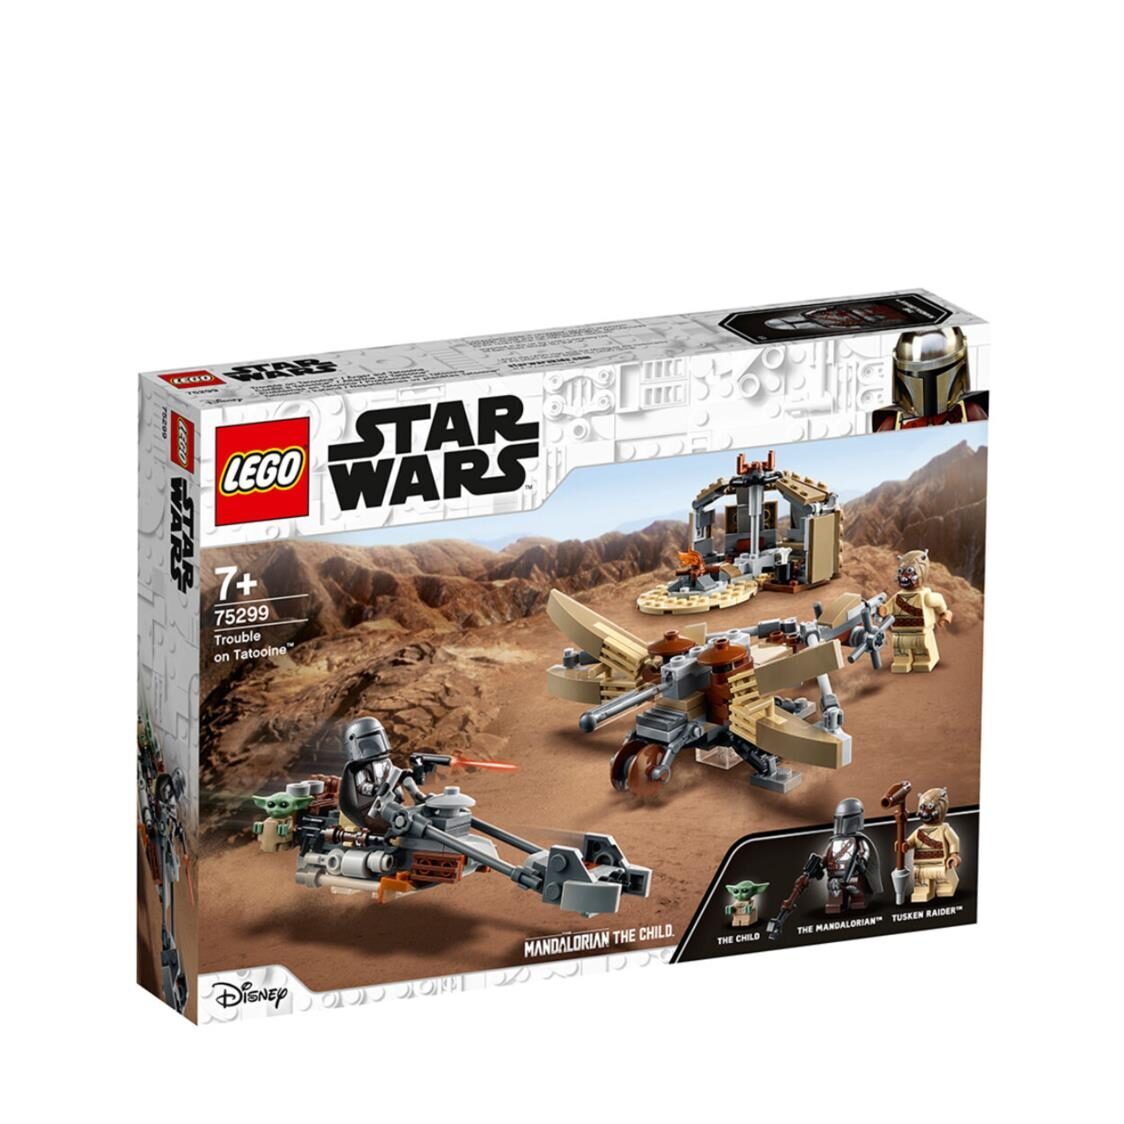 LEGO Star Wars - Trouble on Tatooine 75299